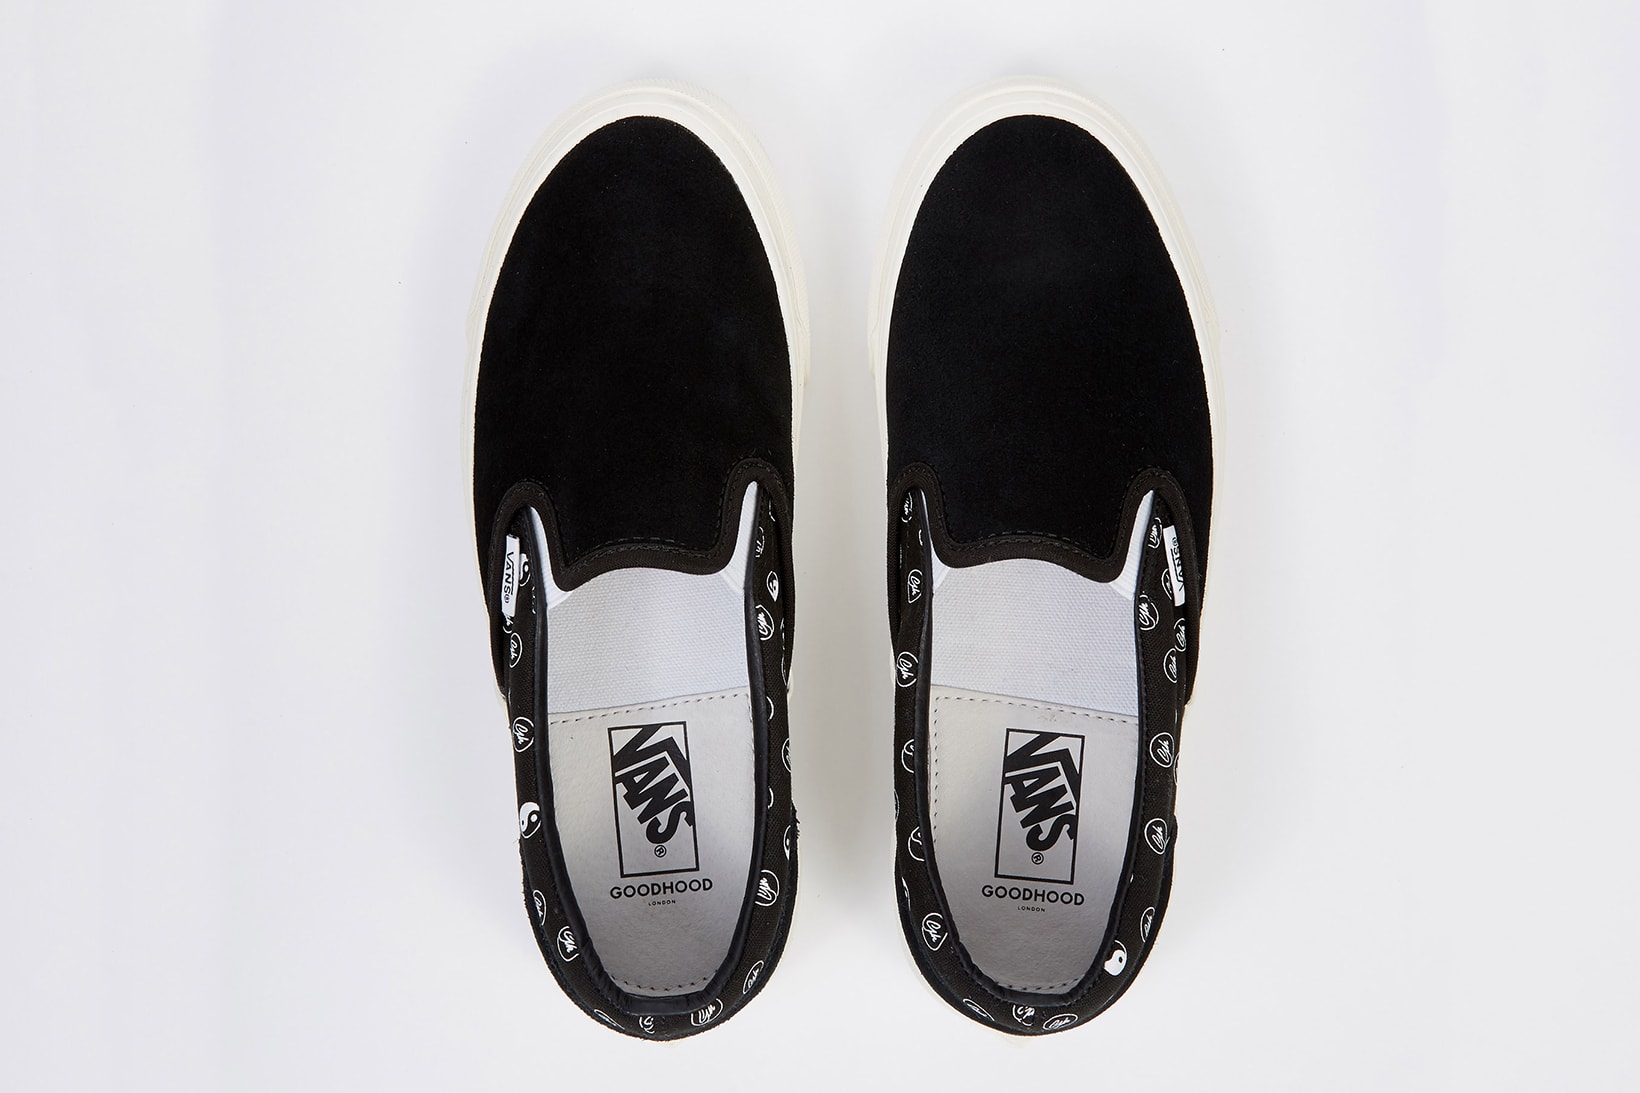 Goodhood x Vans Vault Yin & Yang Slip-On Sneakers Equal / Opposite 2018